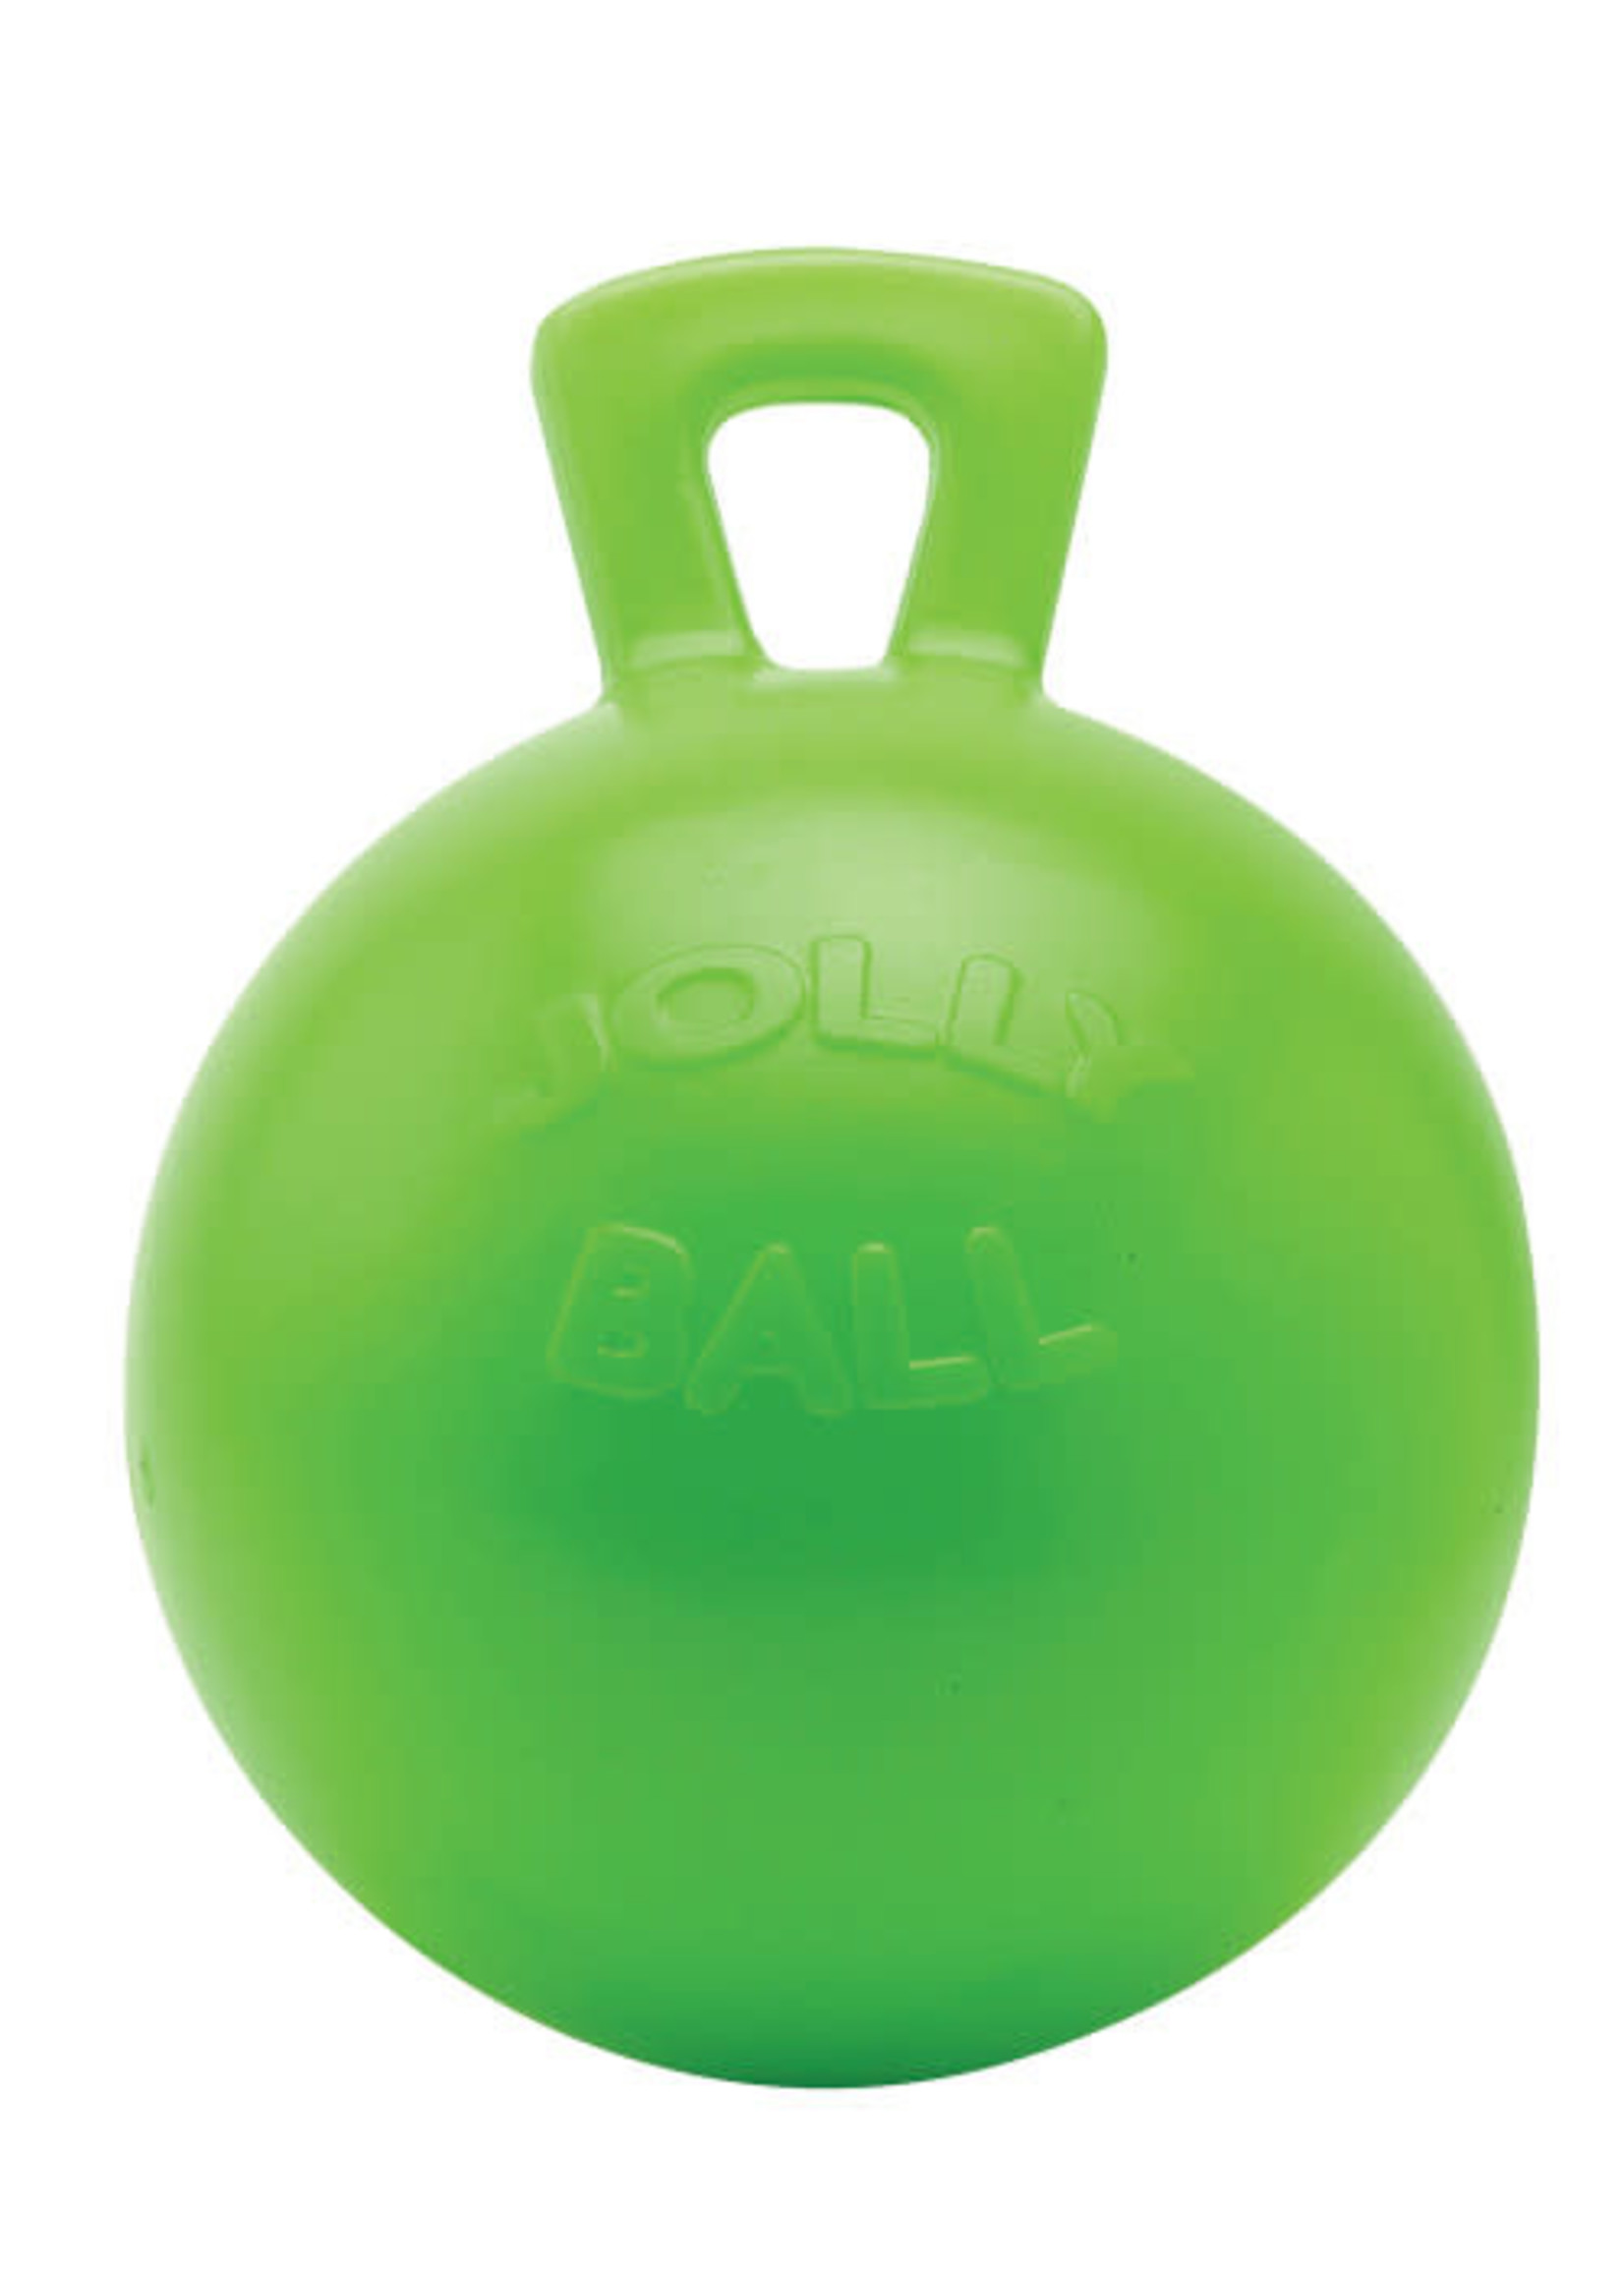 Jolly ball Speelbal Groen Appel